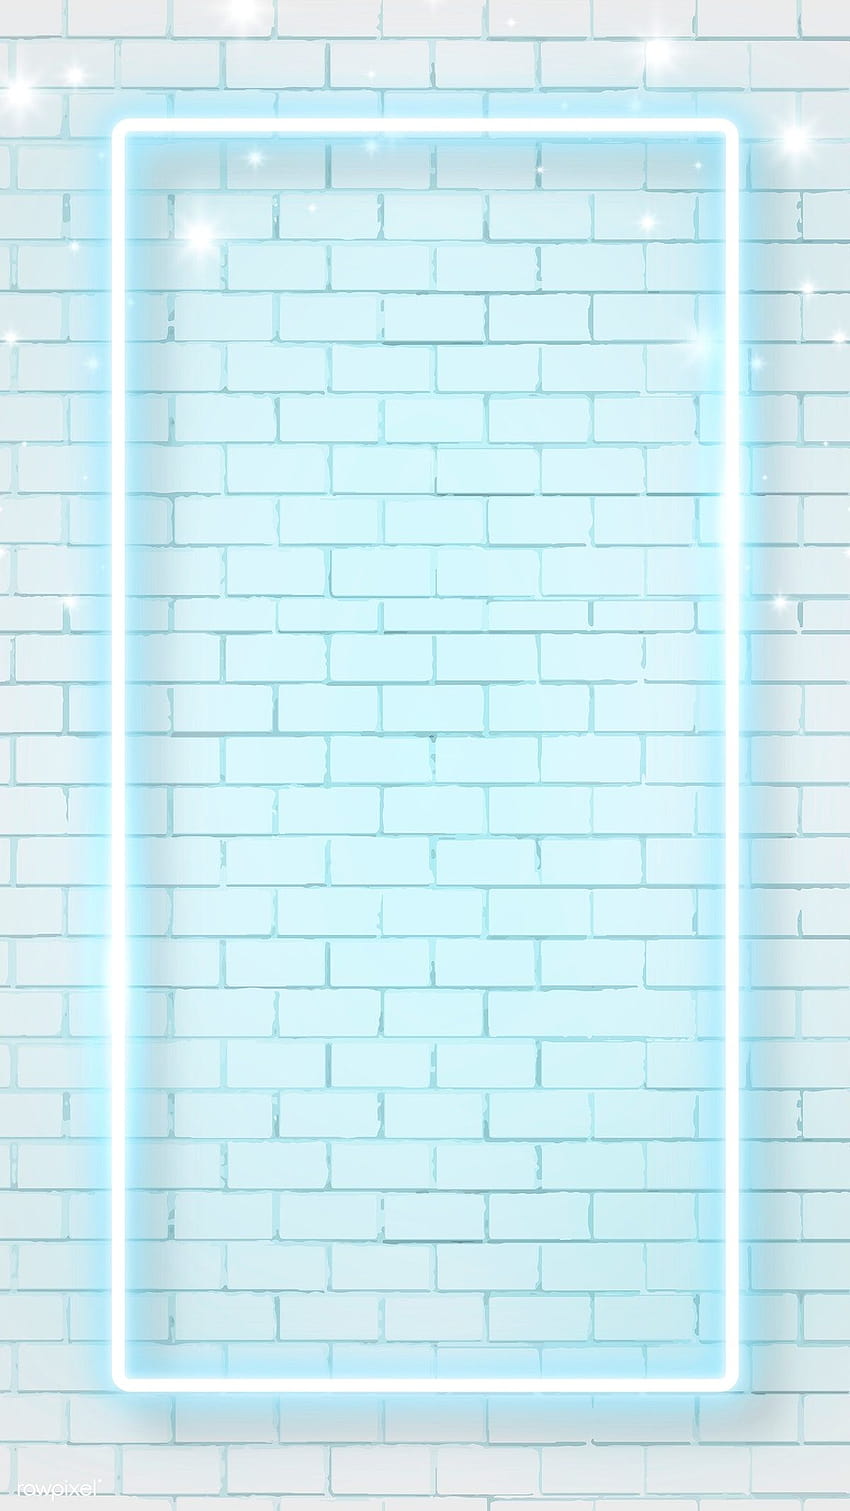 vektor premium bingkai neon biru pada latar belakang dinding bata seluler pada tahun 2020 wallpaper ponsel HD